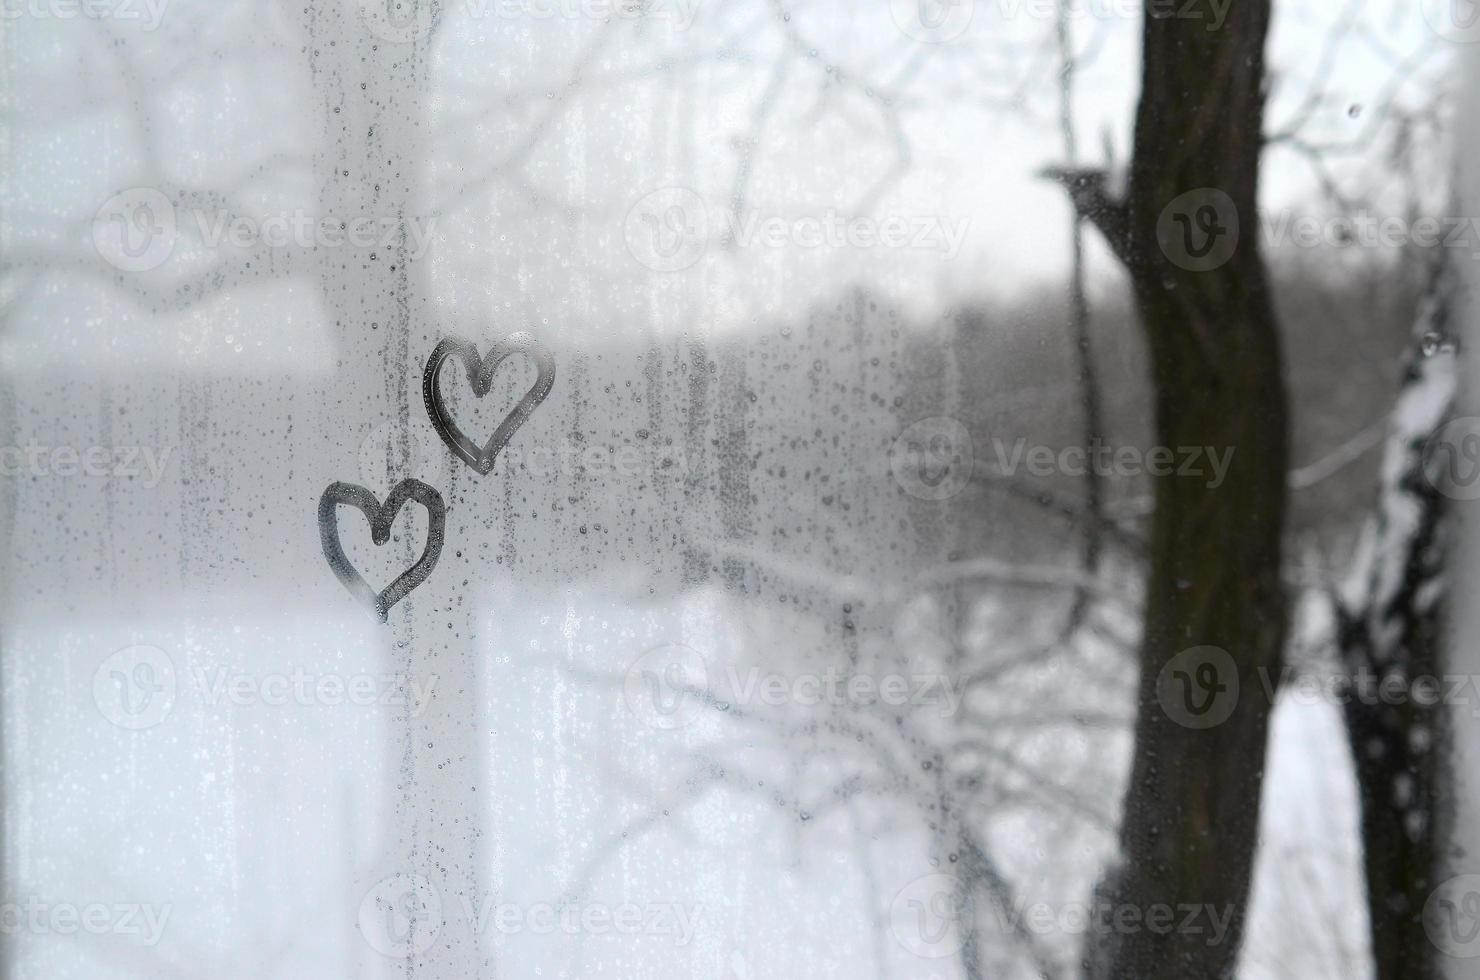 deux coeurs peints sur un verre embué en hiver photo